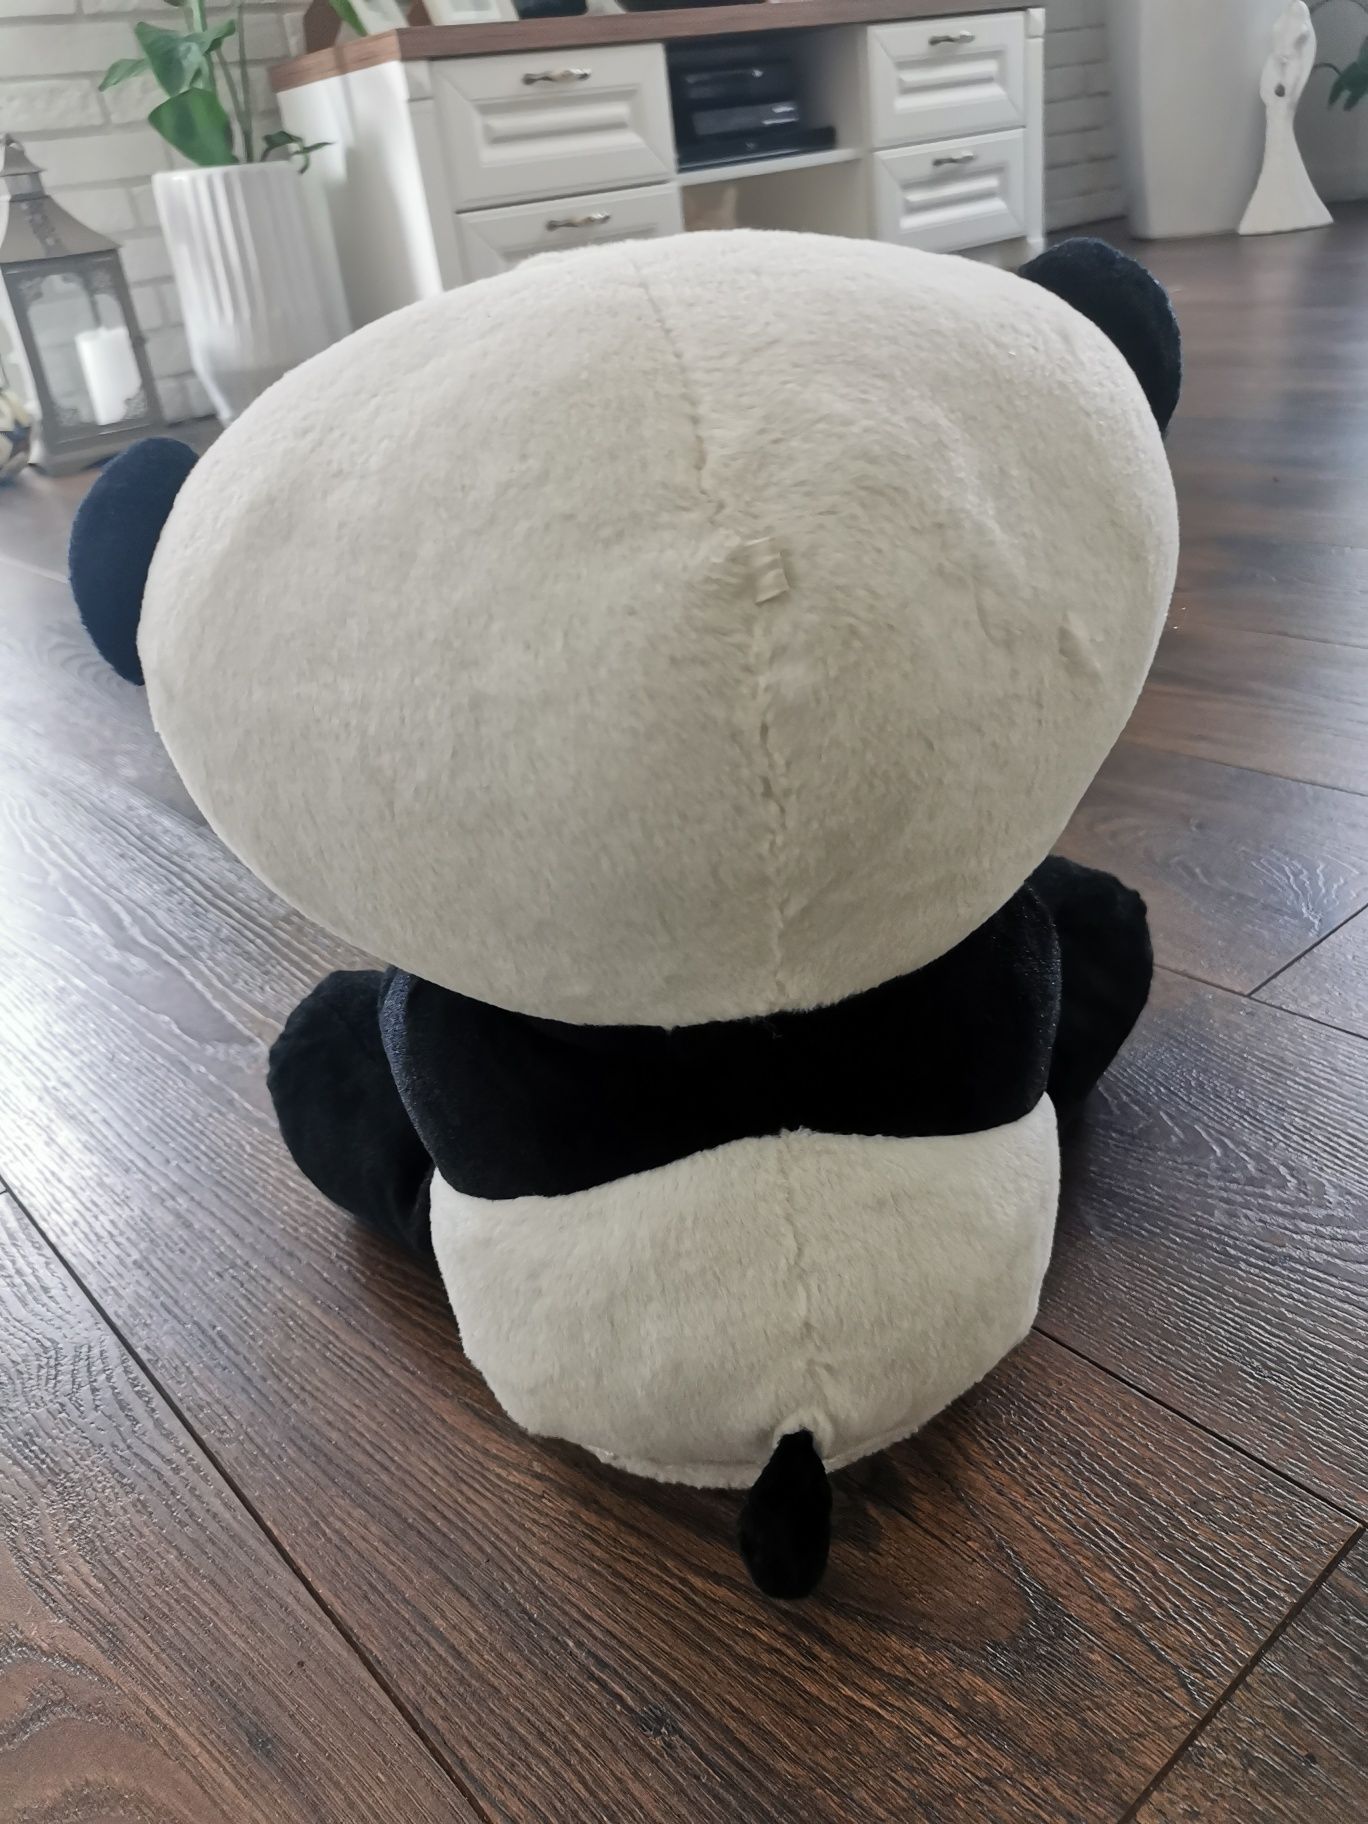 YoYo Panda, zabawka interaktywna